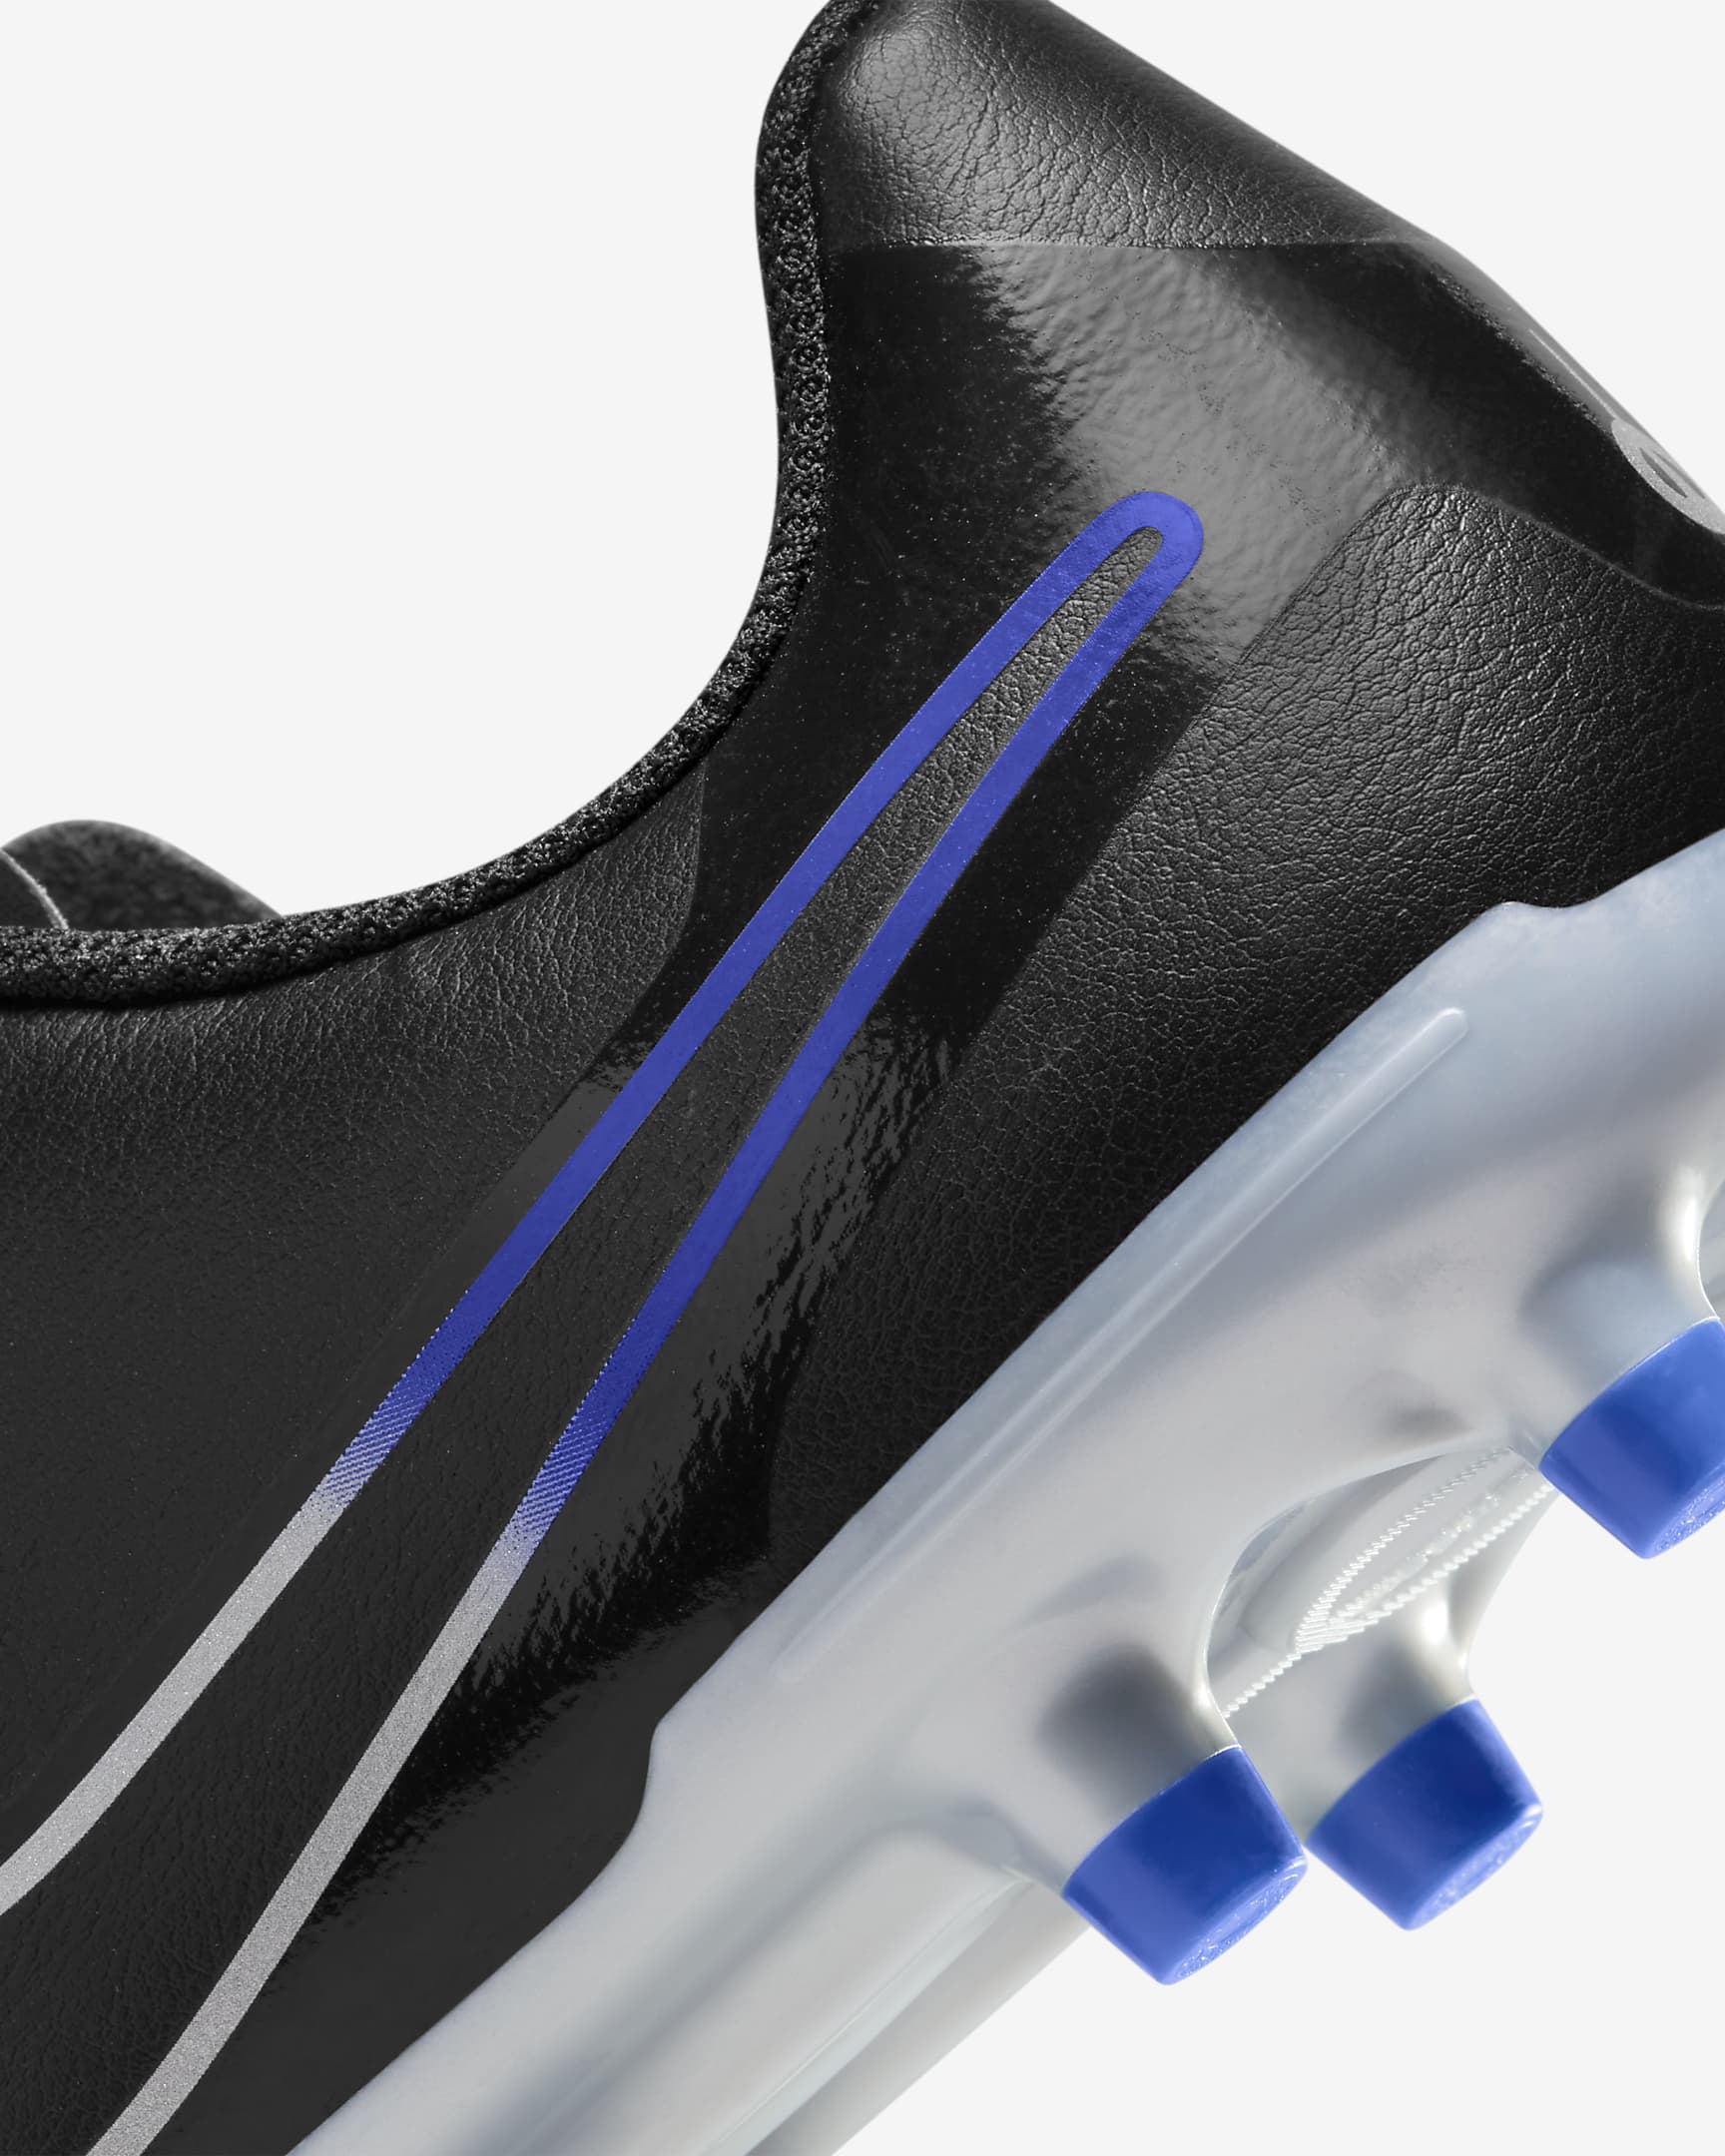 Chaussure de foot basse à crampons multi-surfaces Nike Jr. Tiempo Legend 10 Club pour enfant/ado - Noir/Hyper Royal/Chrome